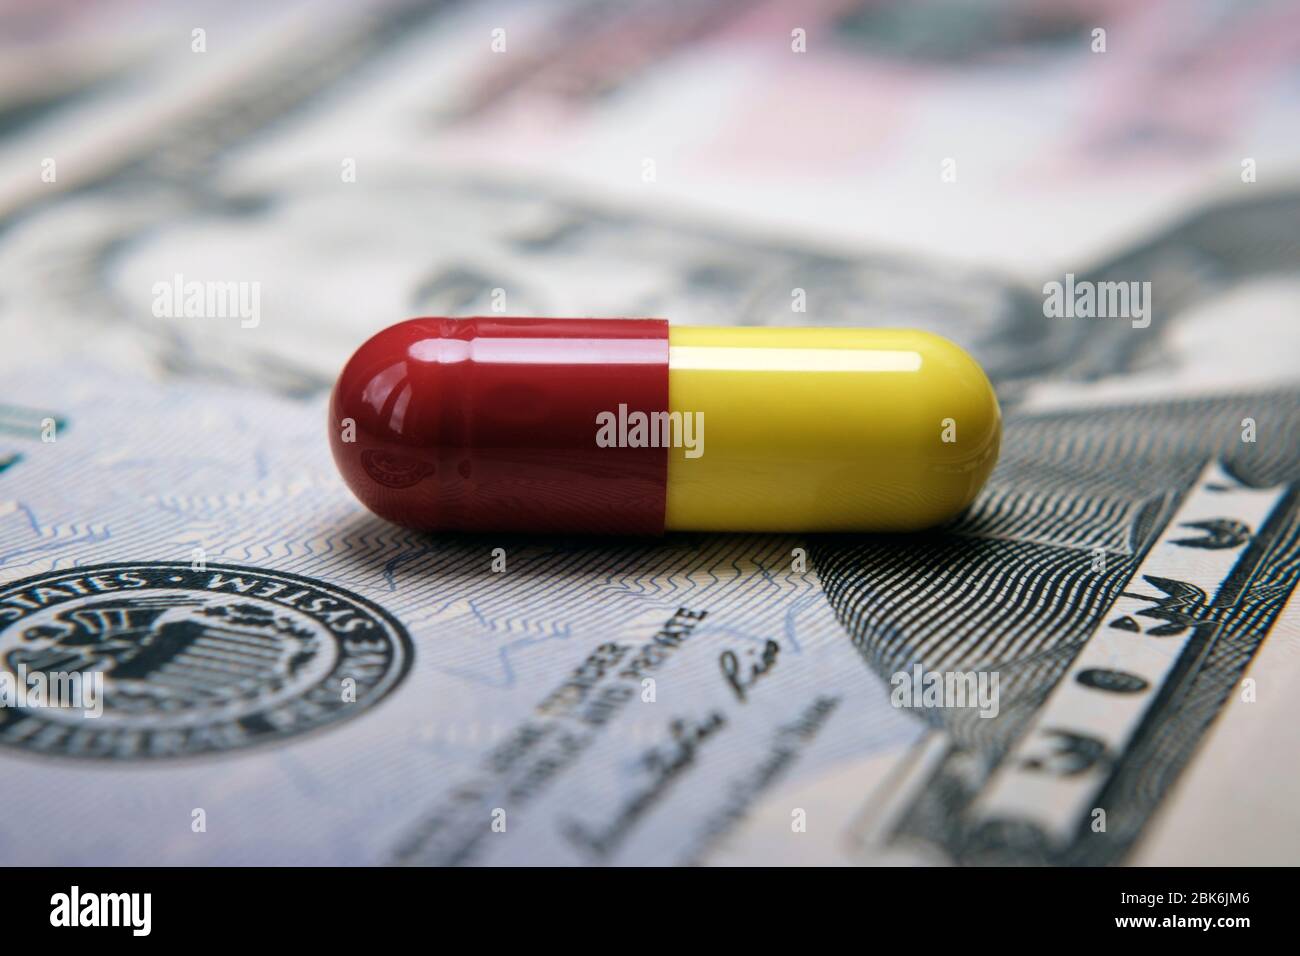 Pille auf 50 Dollar Banknote. Illustrativ für den Gewinn aus der pharmazeutischen Industrie, Kosten für Pillen und medizinische Versorgung. Konzeptfoto. Stockfoto